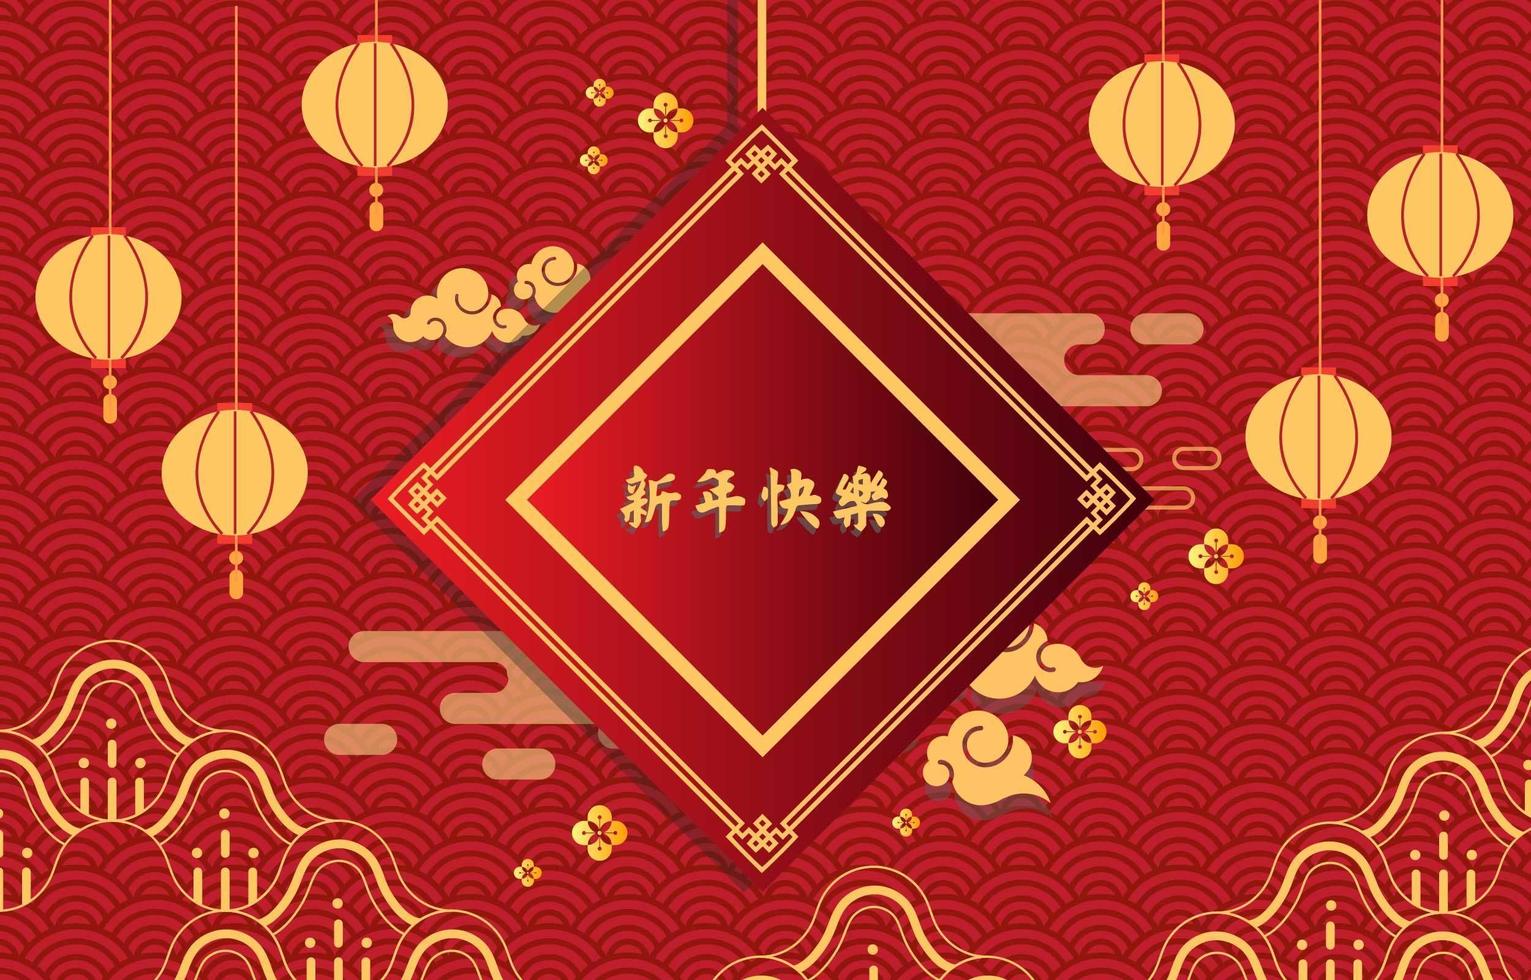 röd och gul kinesisk nyårsbakgrund vektor